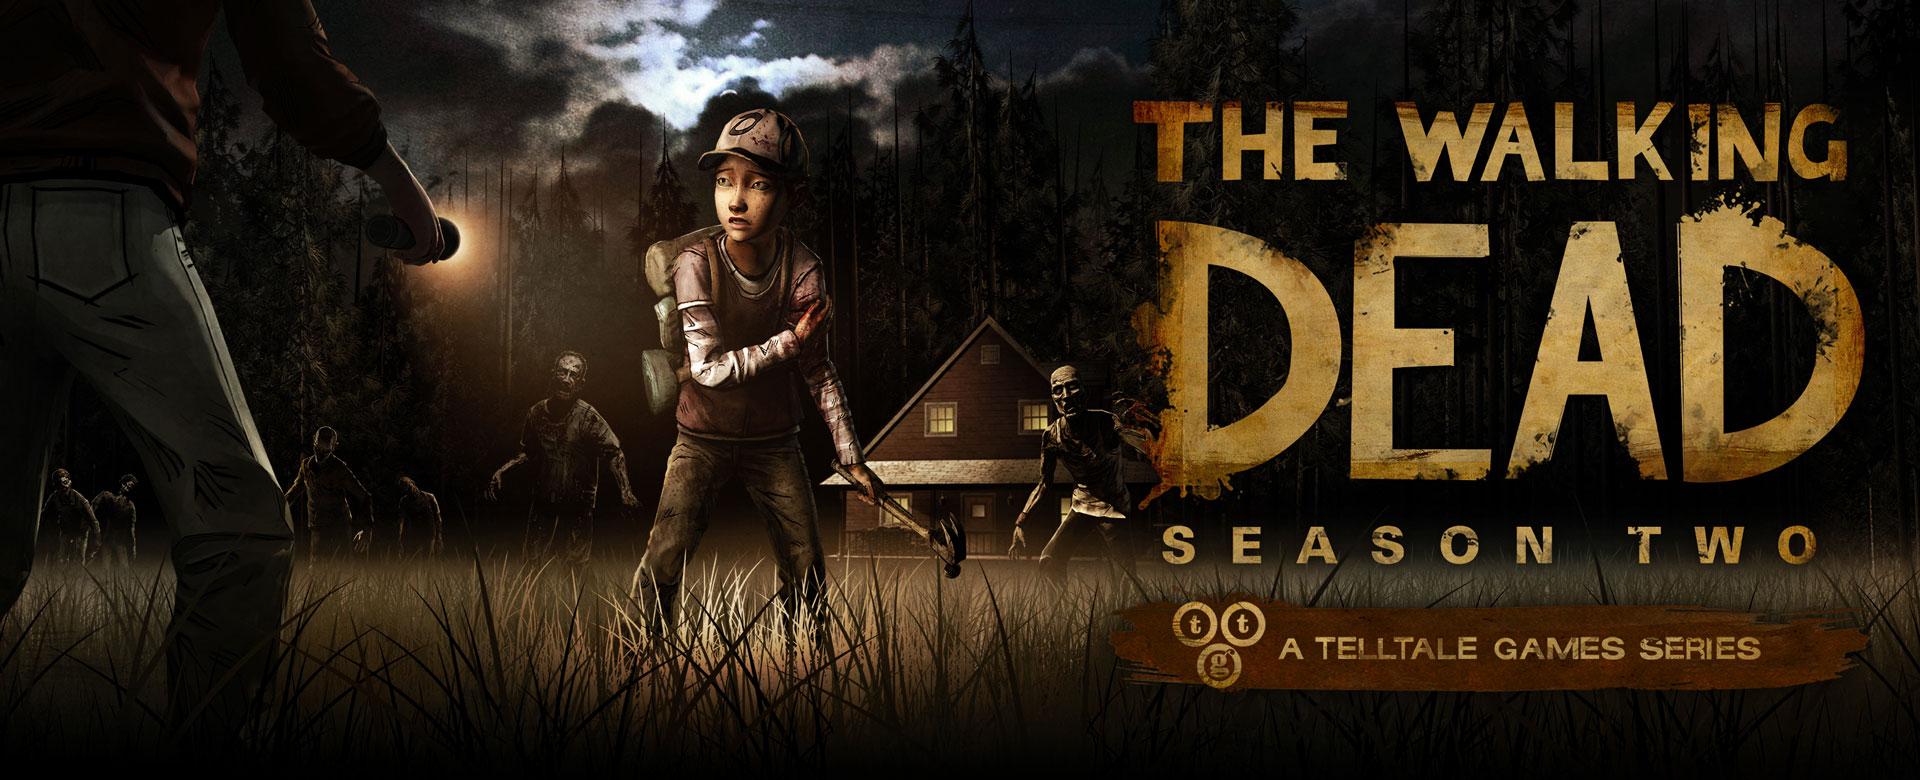 Review - The Walking Dead: Season 2